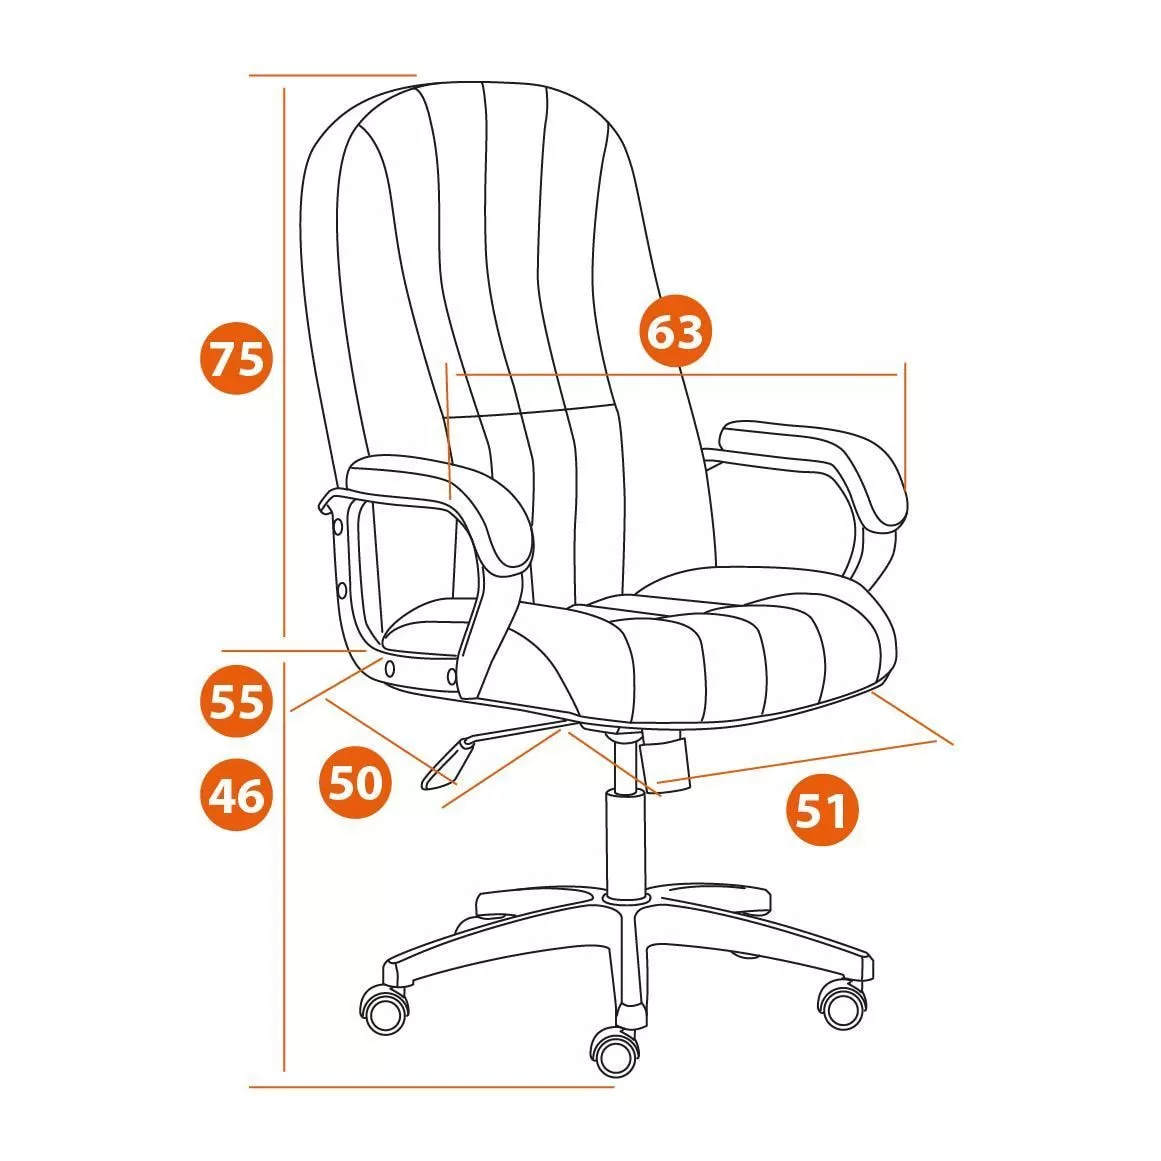 Кресло СН888 LT (22) ткань серый